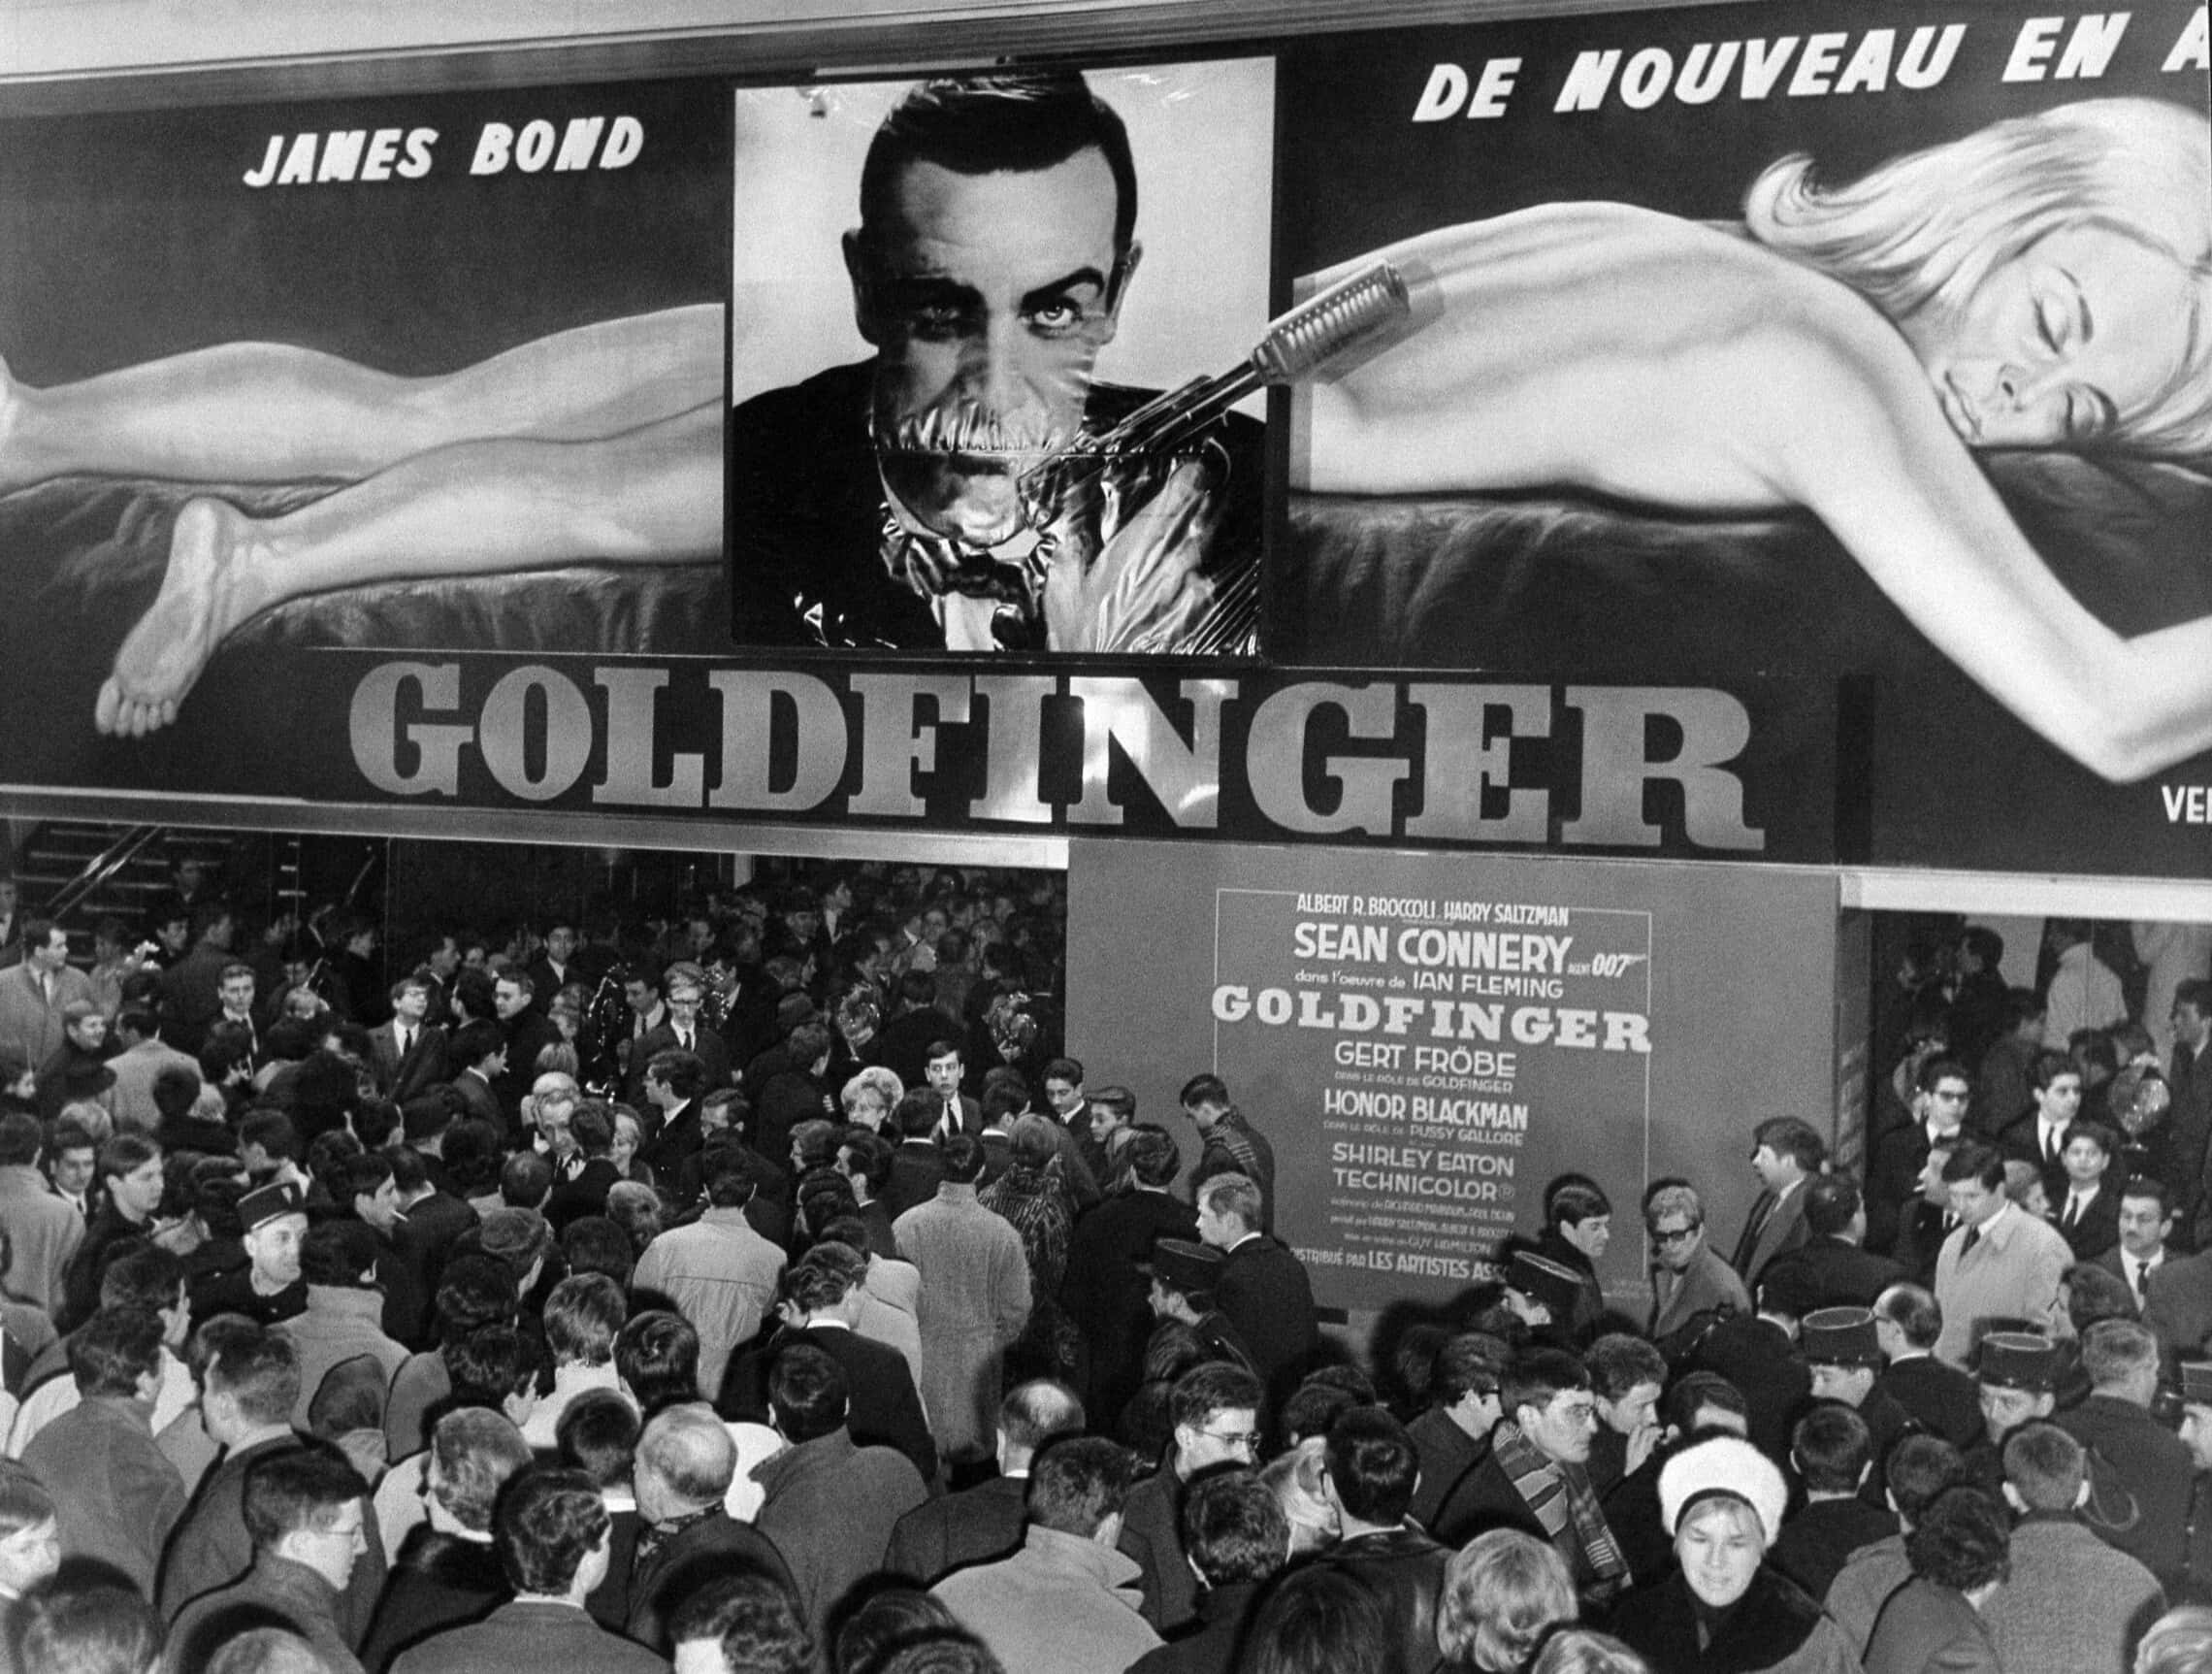 אנשים מחכים מחוץ לבית הקולנוע בפריז כדי לצפות ב&quot;גולדפינגר&quot;, 18 בפברואר 1965 (צילום: AFP)